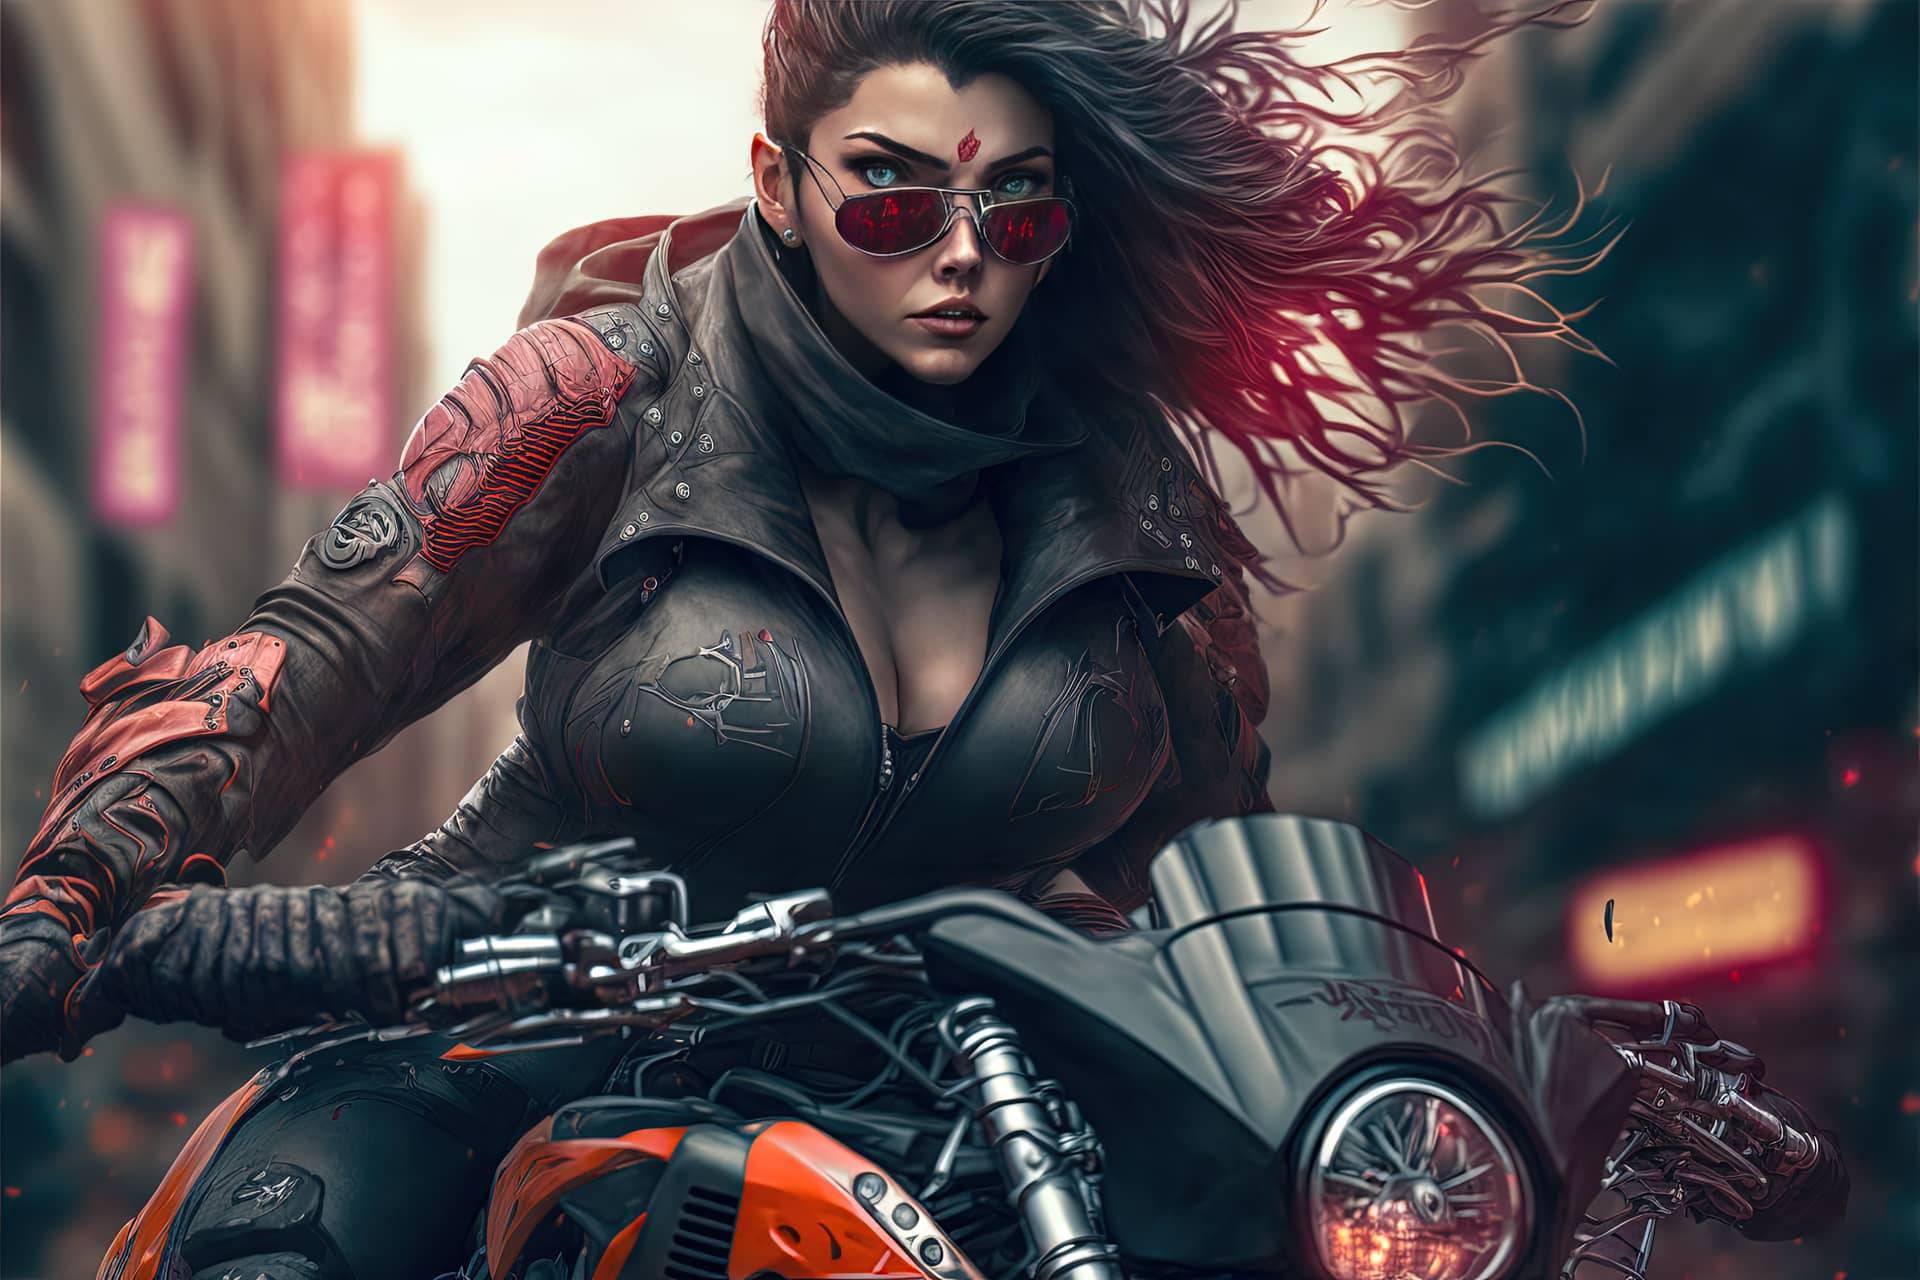 Beautiful cyberpunk girl riding futuristic motorbike futuristic city female profile picture